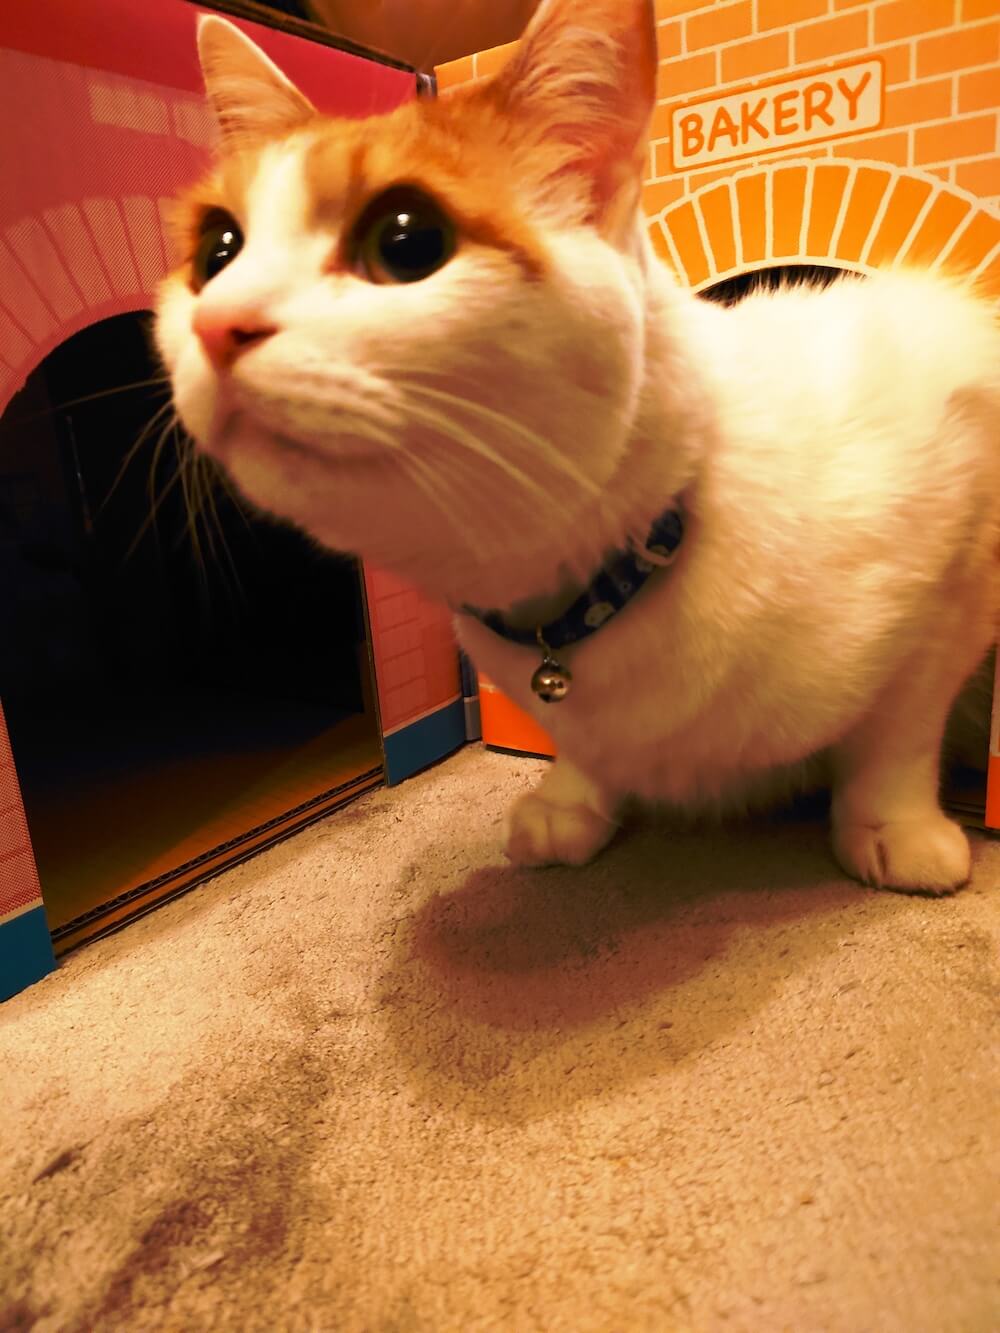 「にゃんこトンネルシェルター」から出てくる猫のイメージ